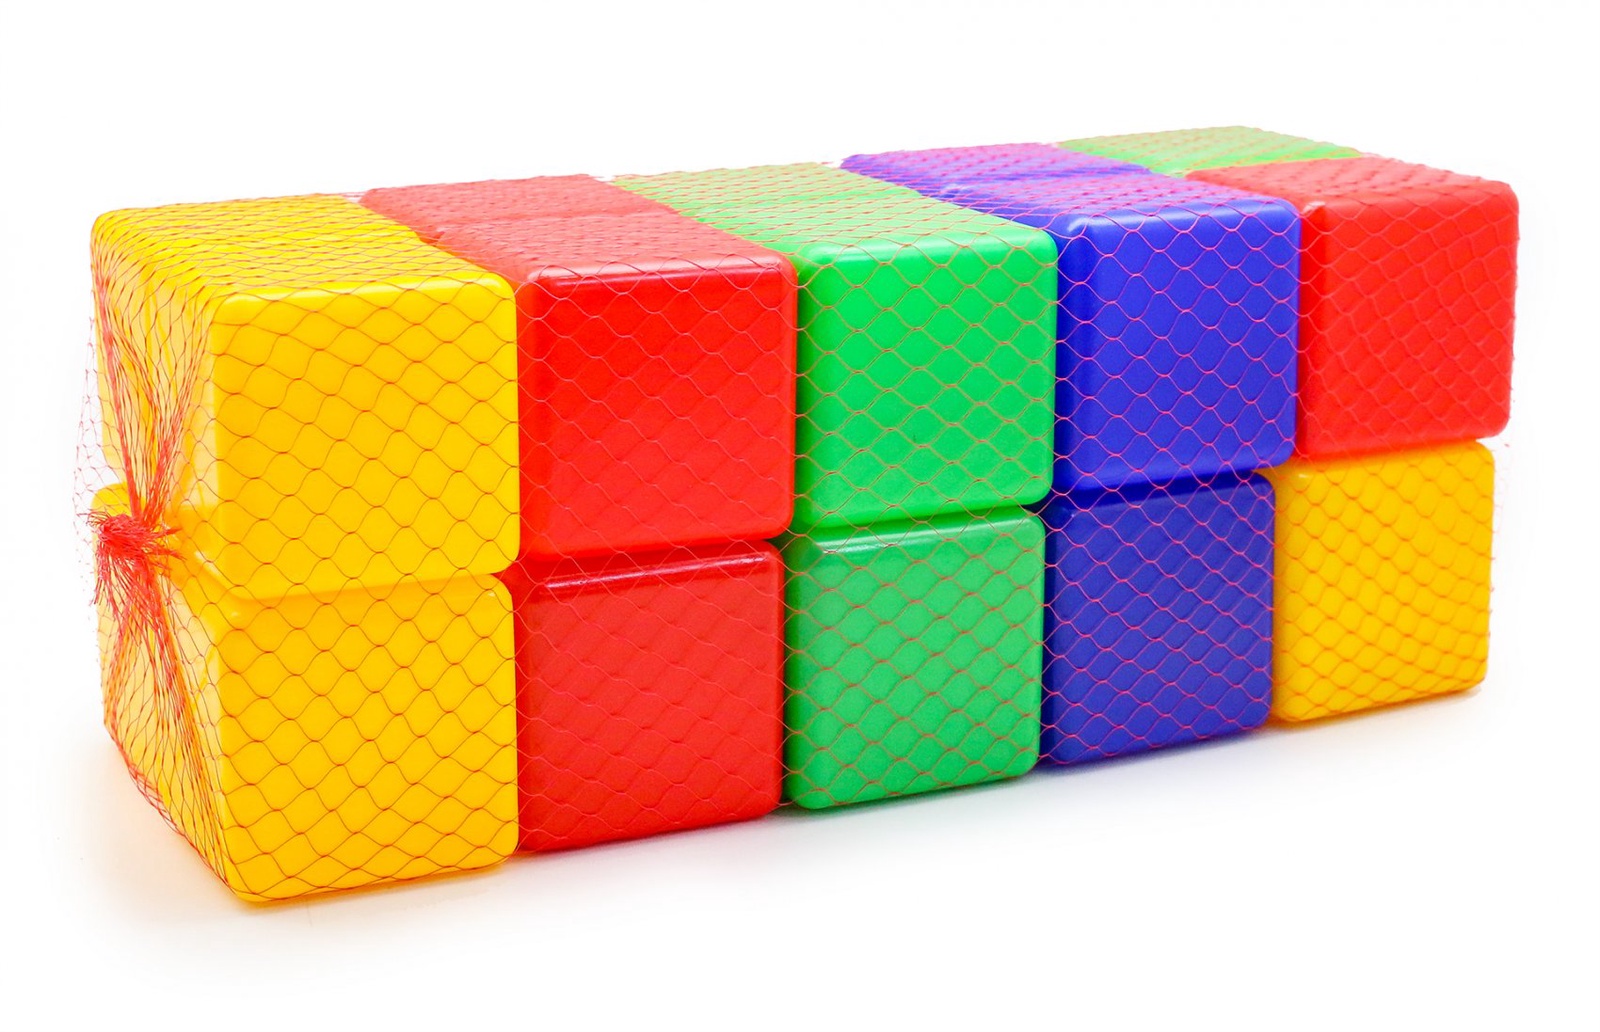 Кубики пластмассовые для детей большие